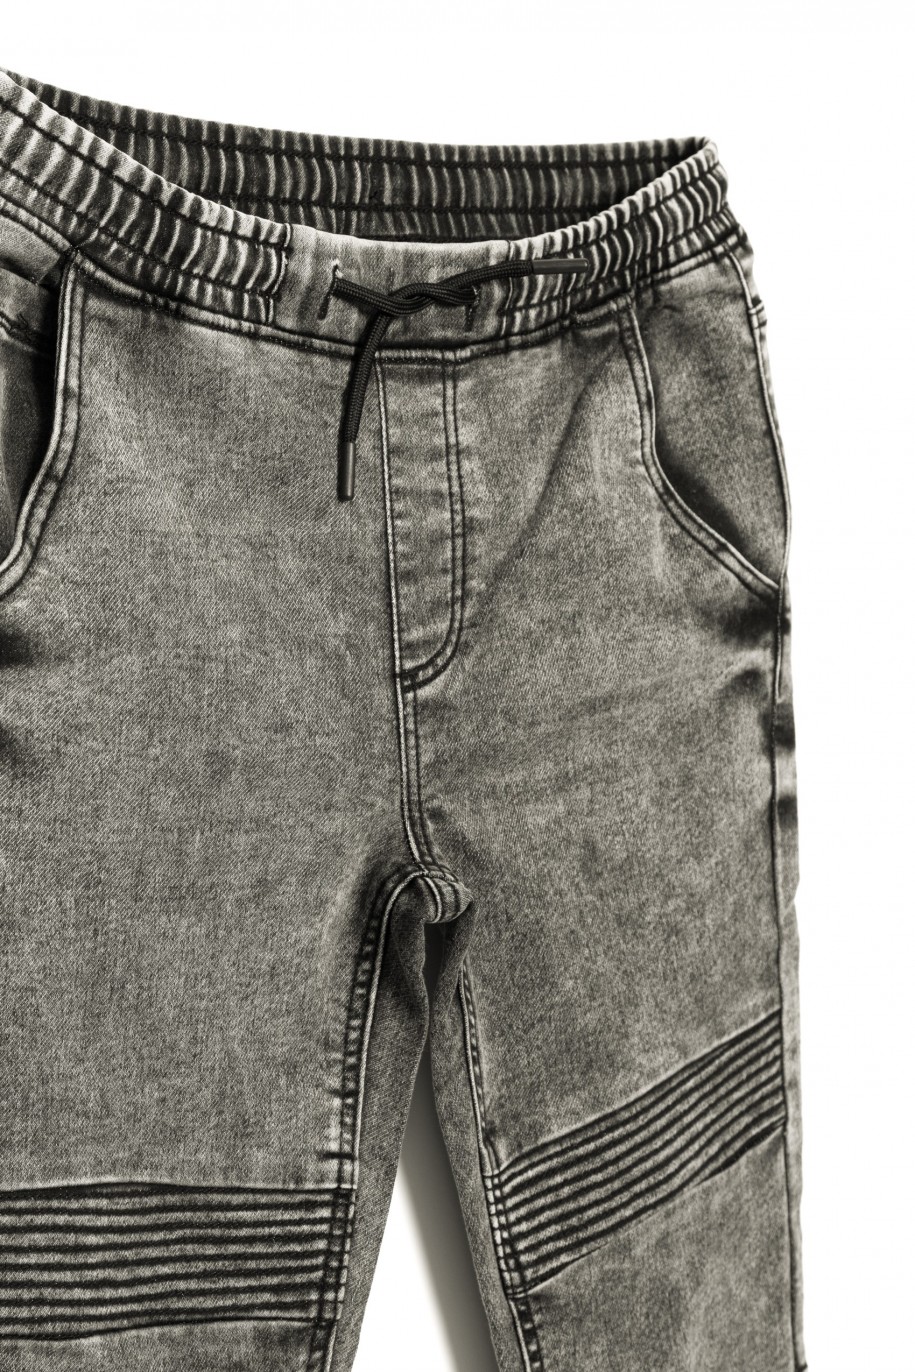 Szare jeansowe joggery dla chłopaka z przeszyciami - 30141